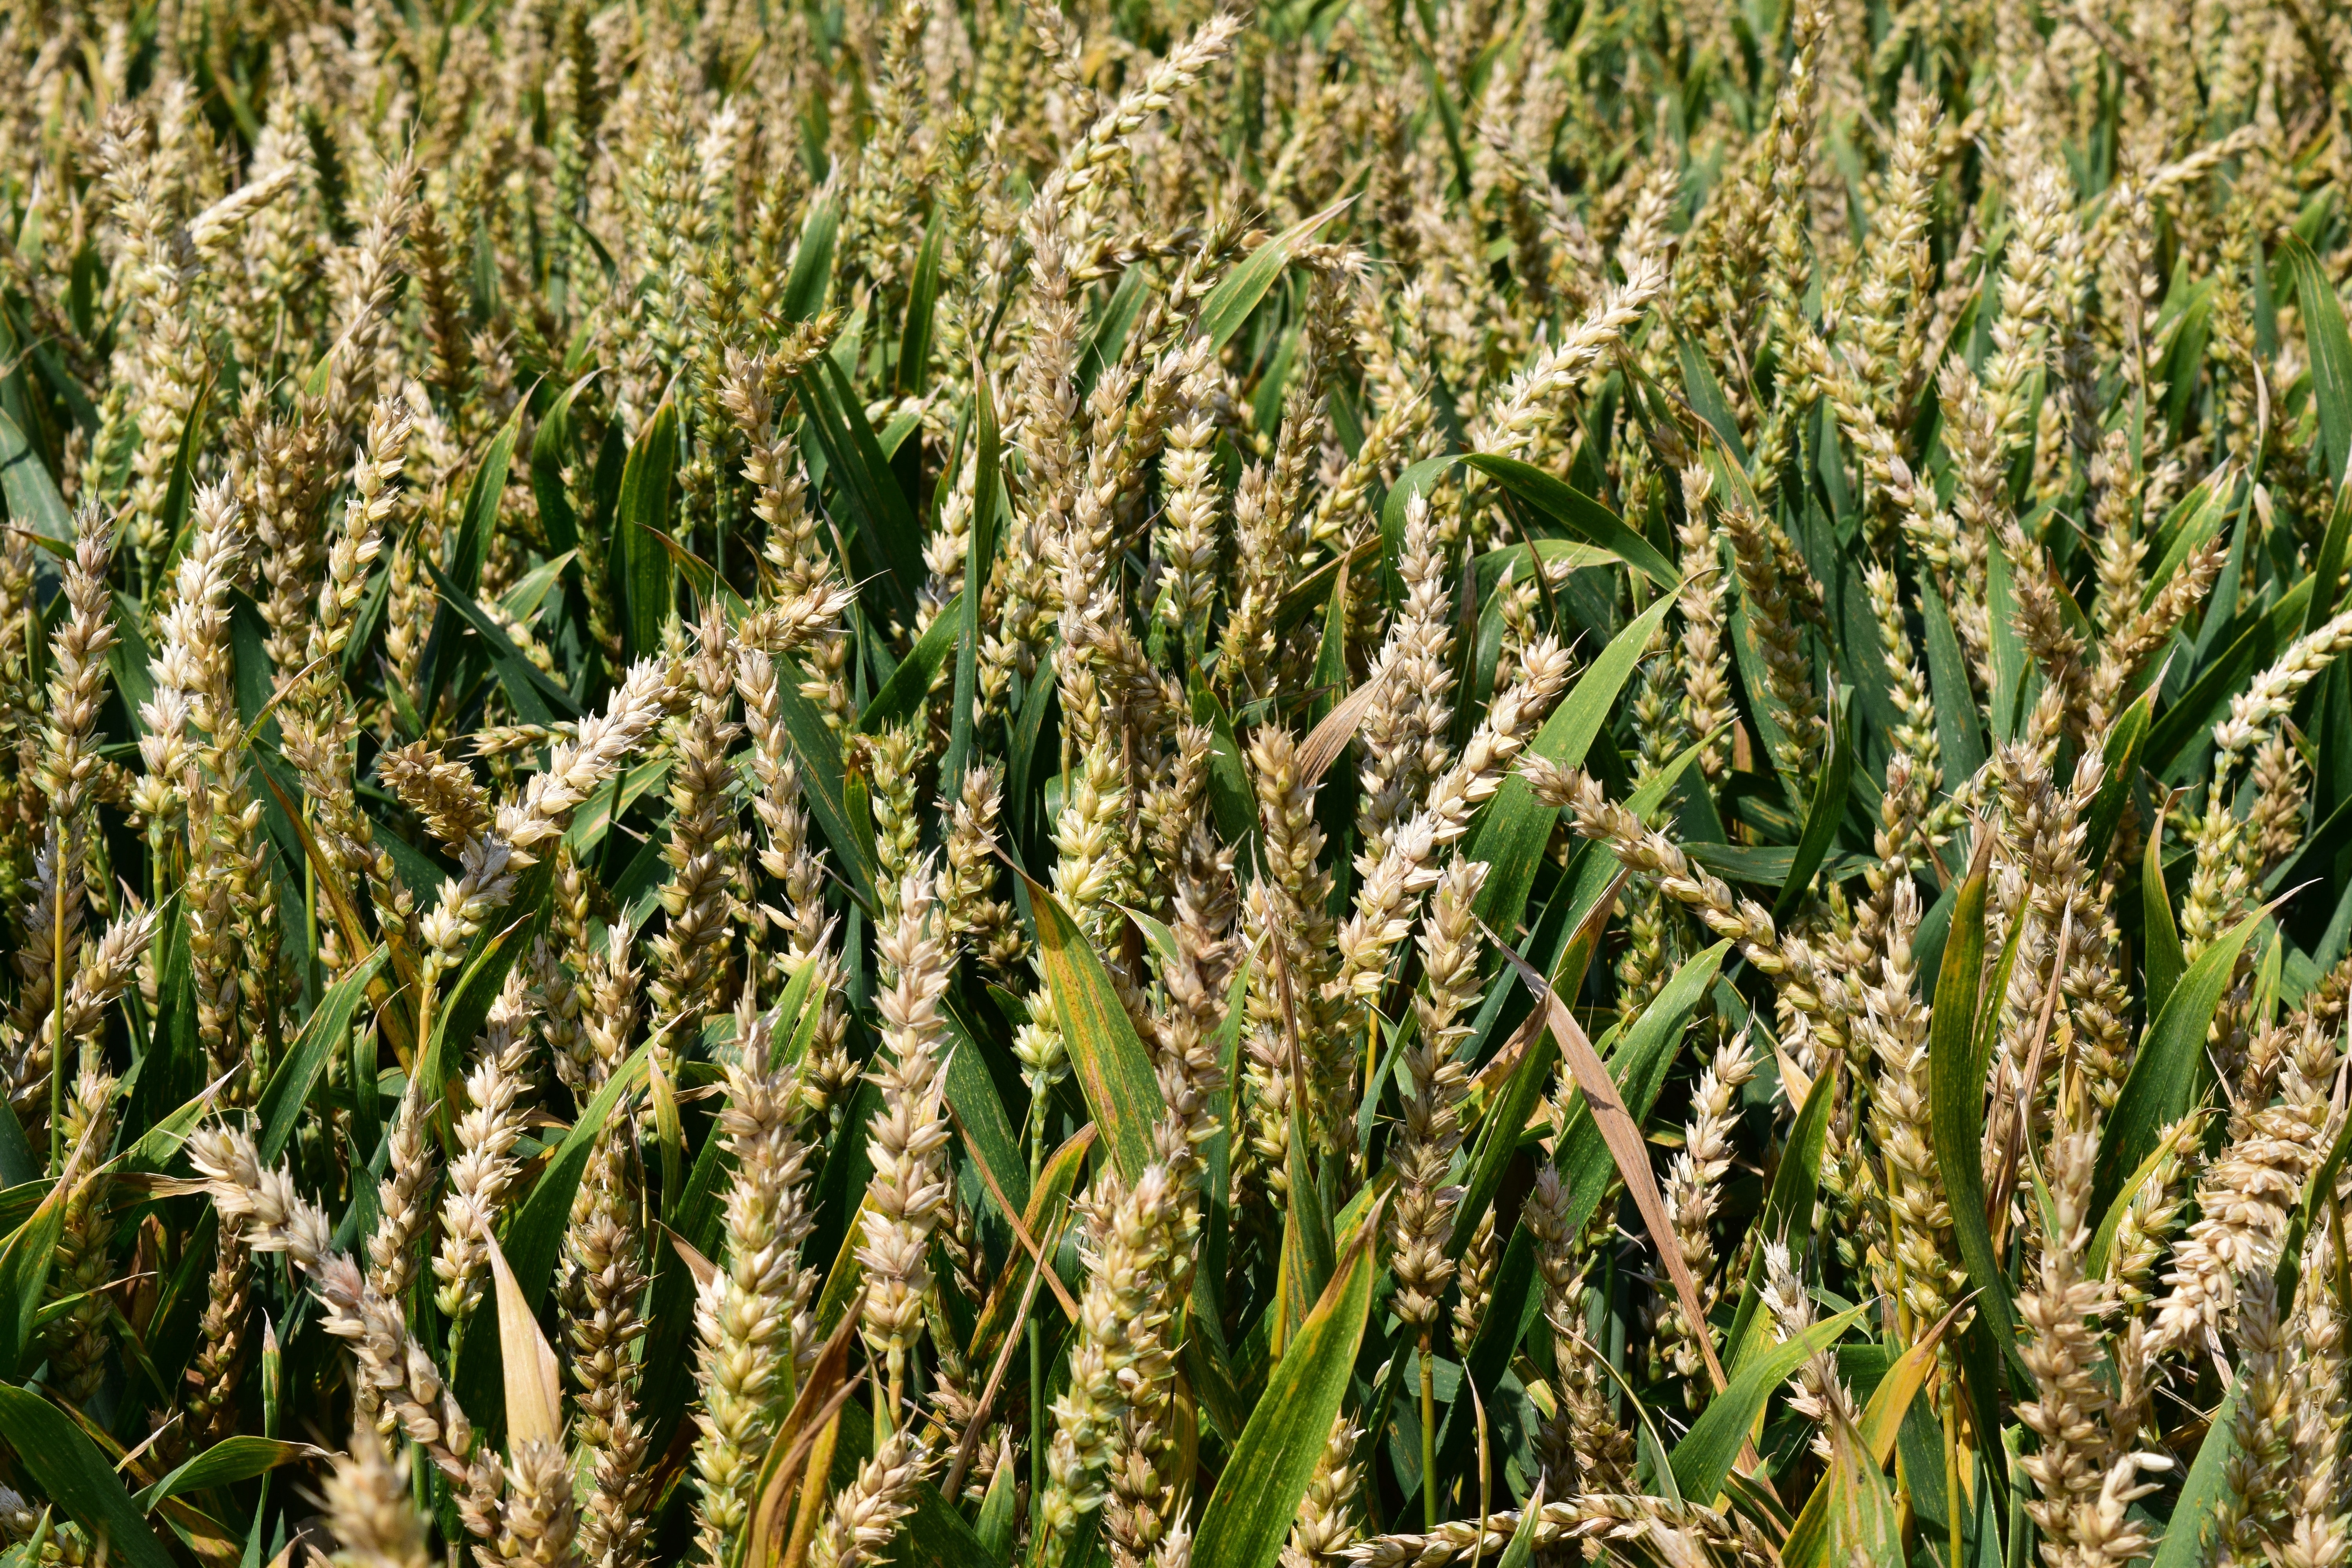 wheat fields